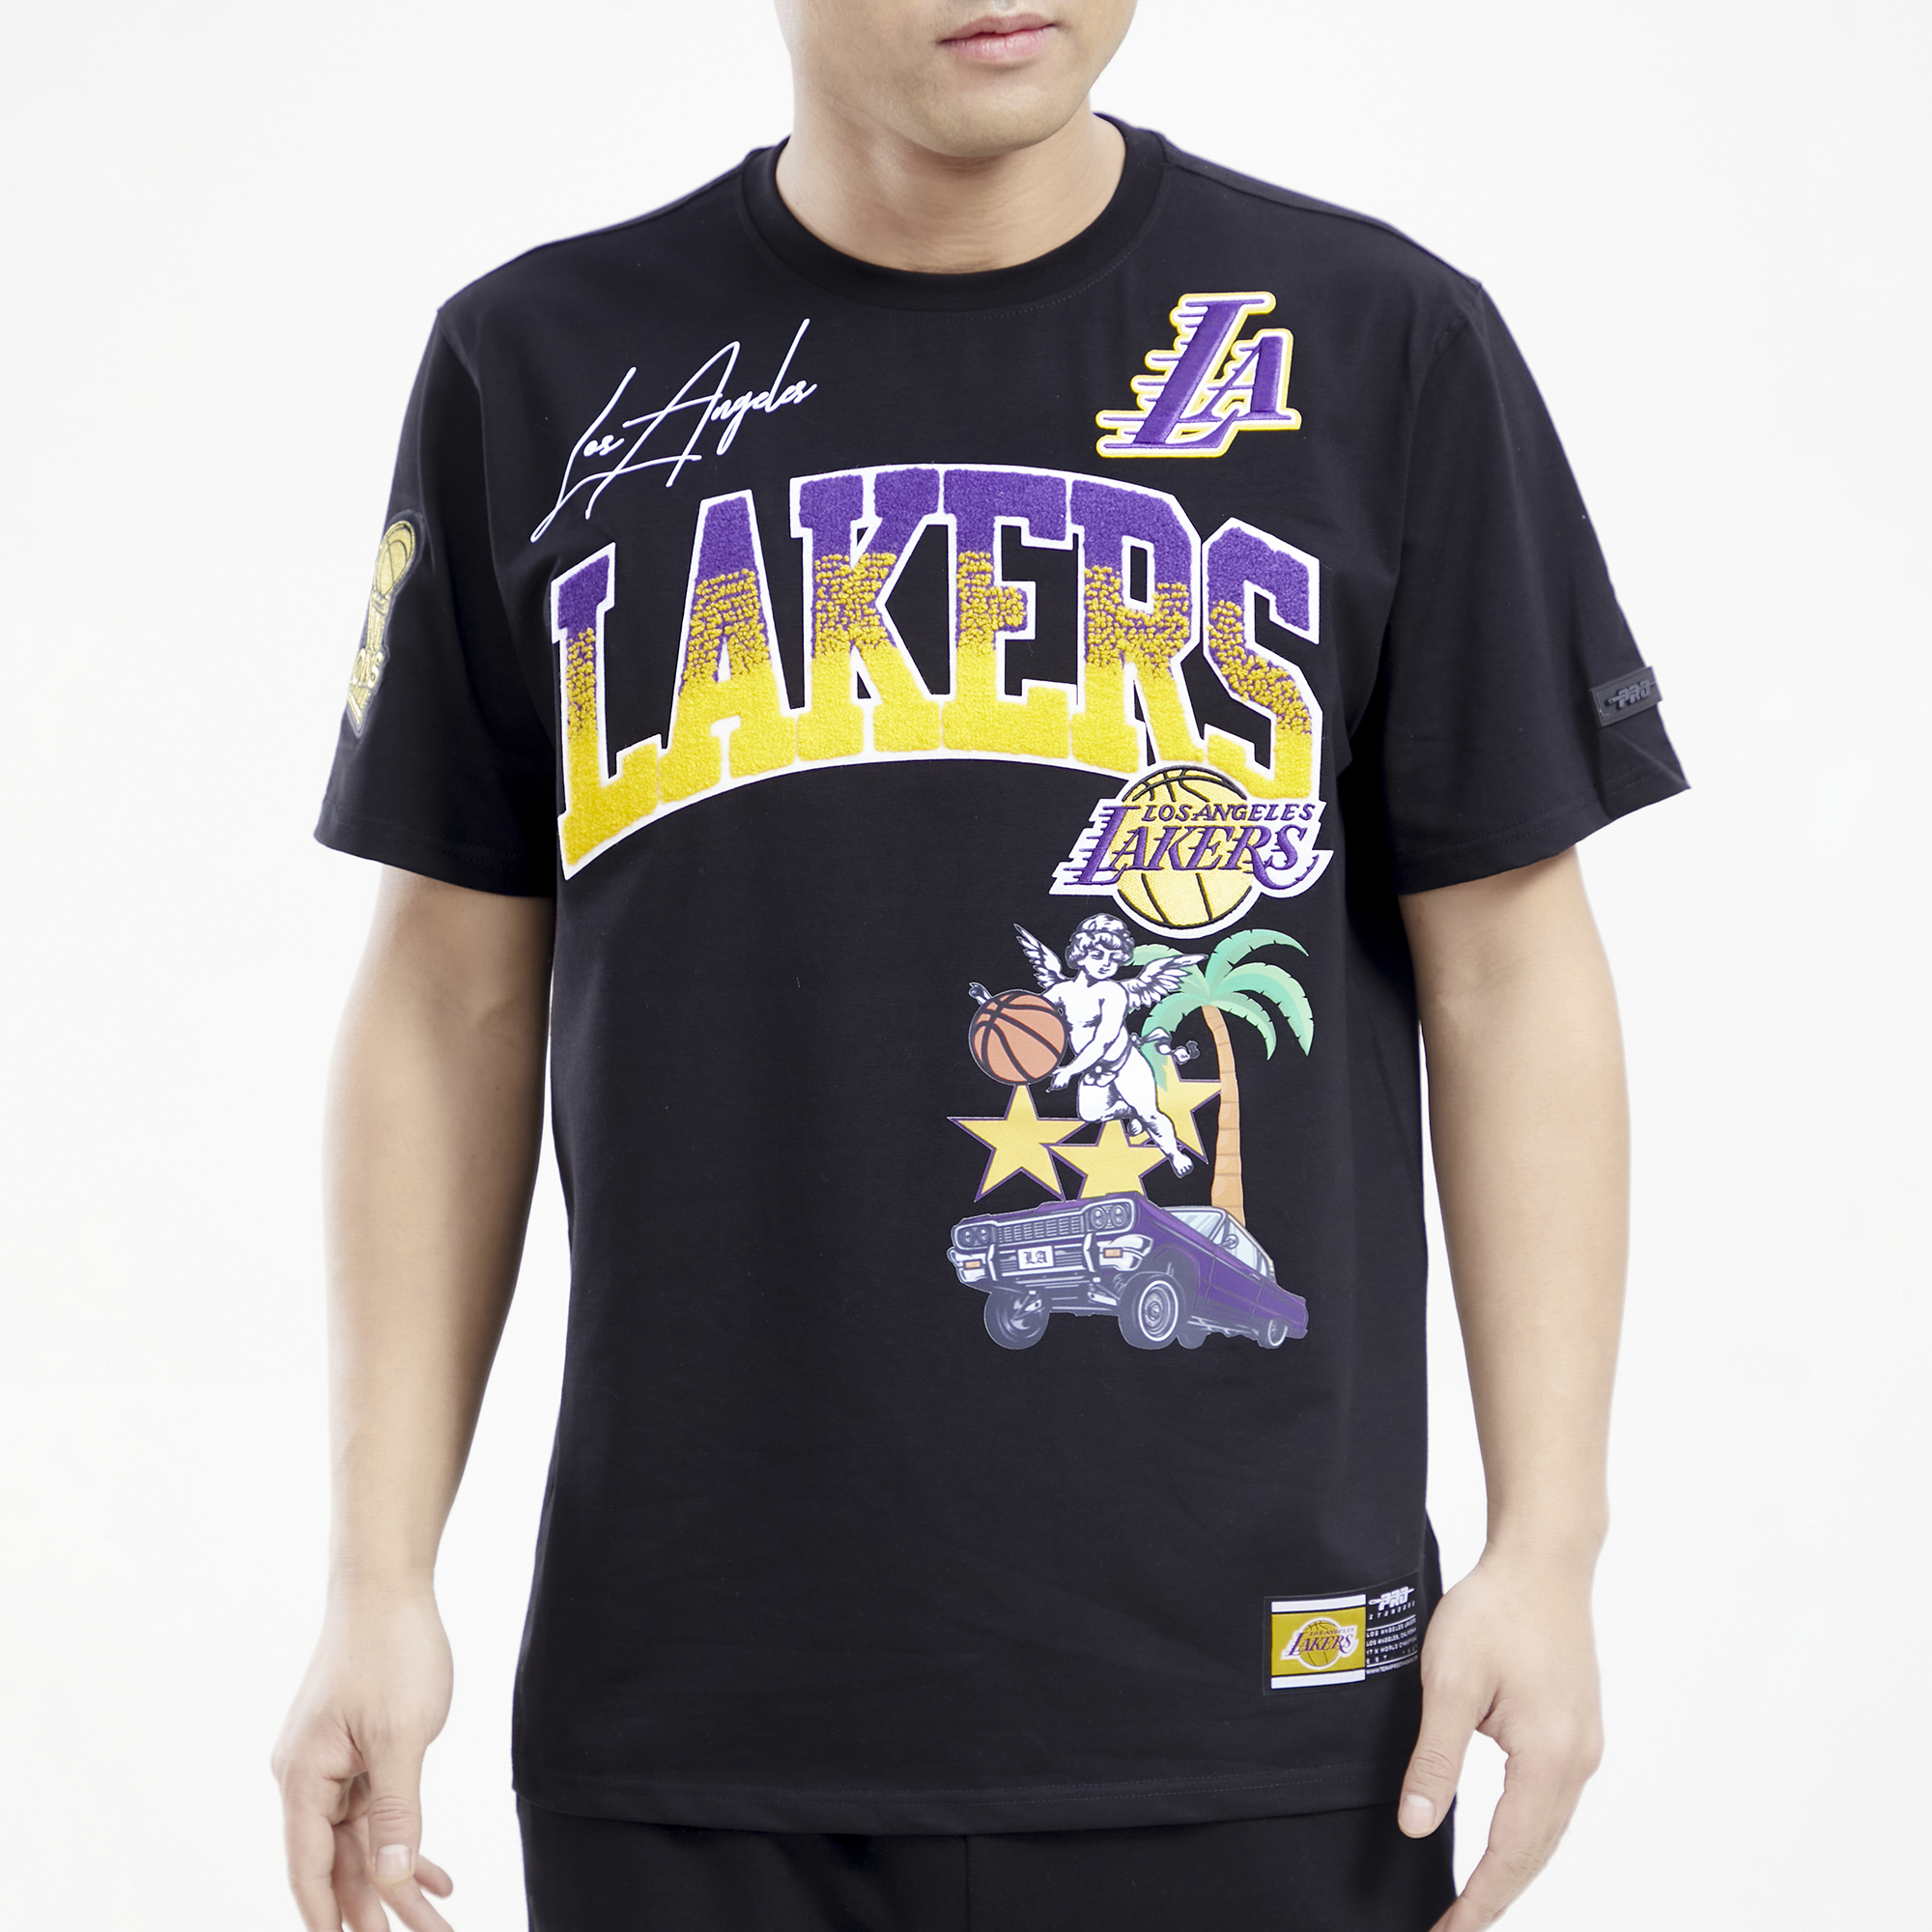 Pro Standard Lakers Wheat T-Shirt - Men's